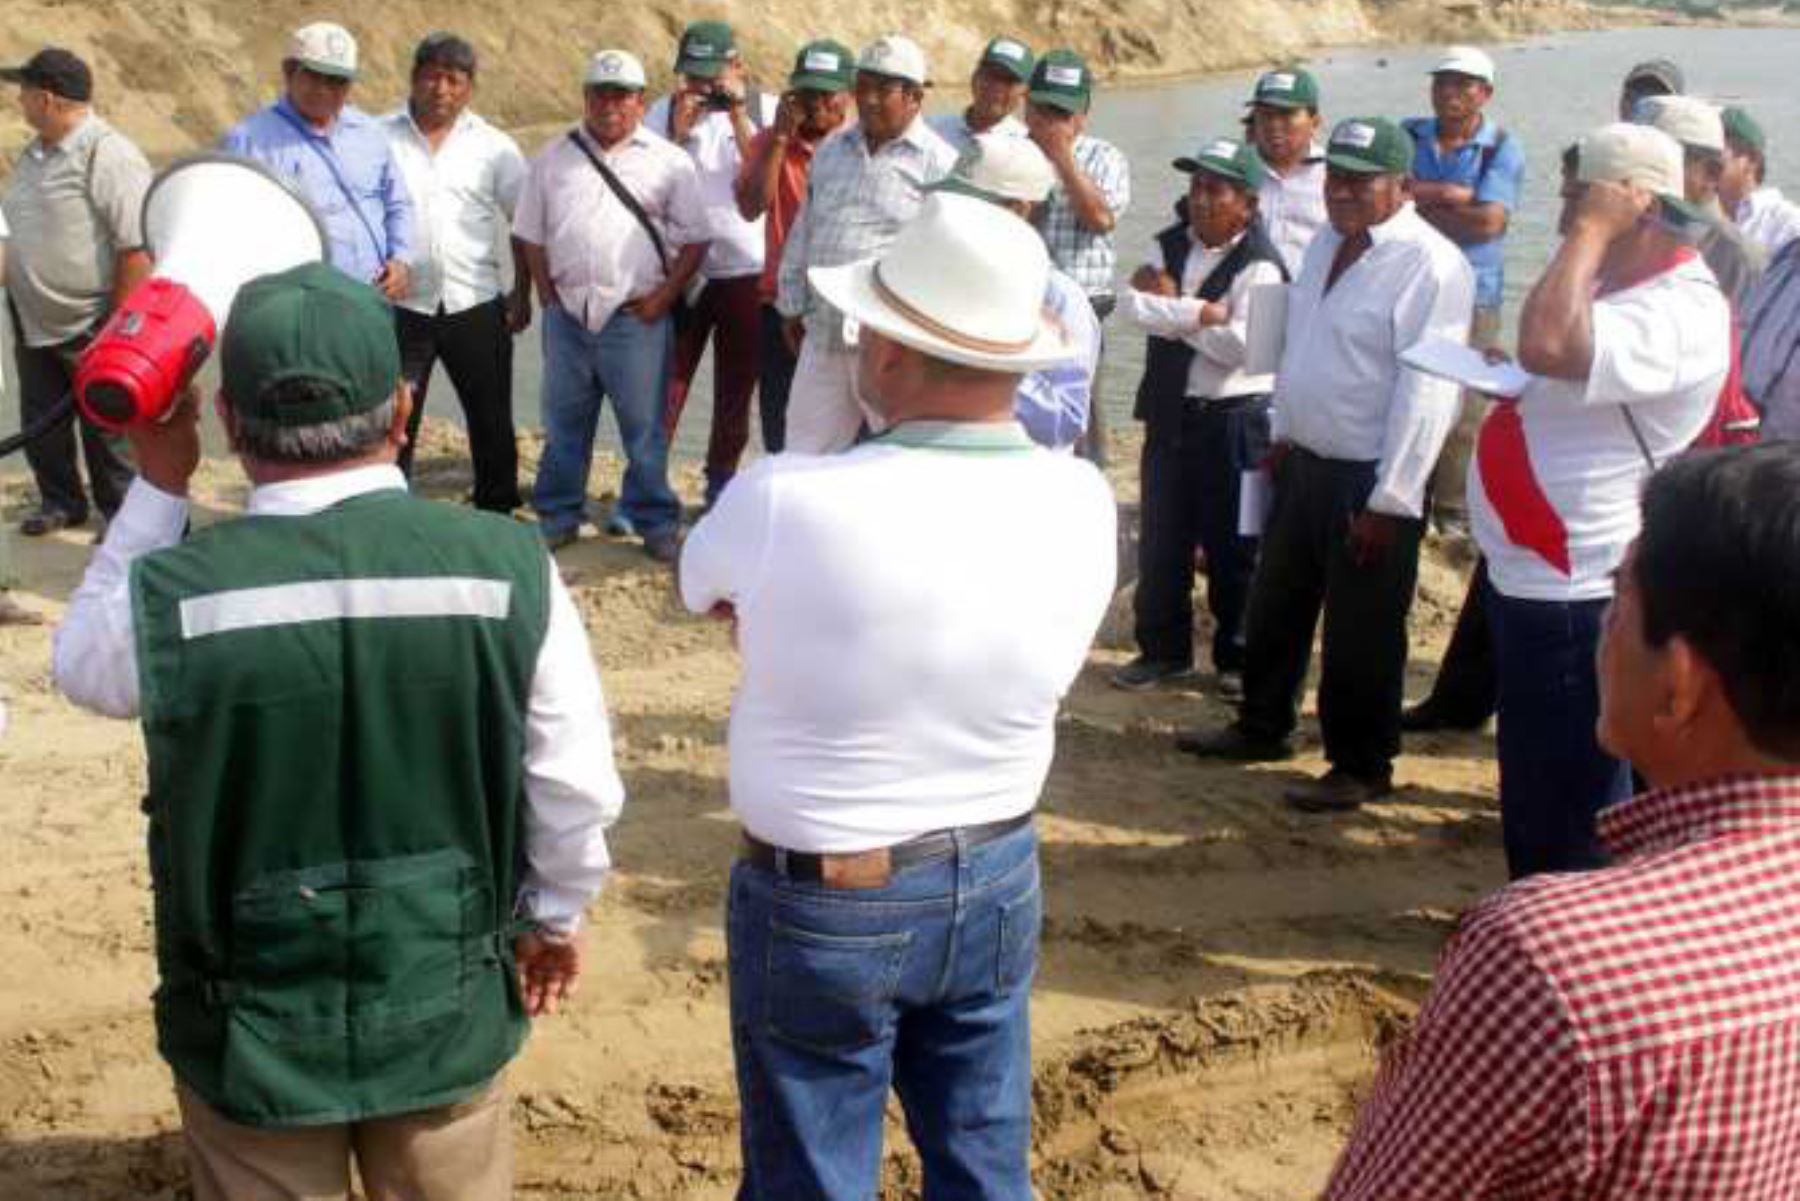 El gobierno del Perú, a través del Ministerio de Agricultura y Riego (Minagri), inició el proceso de socialización y consulta del proyecto de Ley que promueve el Fortalecimiento de la Ley de Organizaciones de Usuarios del Agua, para lo cual, dispuso su publicación en la página web de la Autoridad Nacional del Agua (ANA).